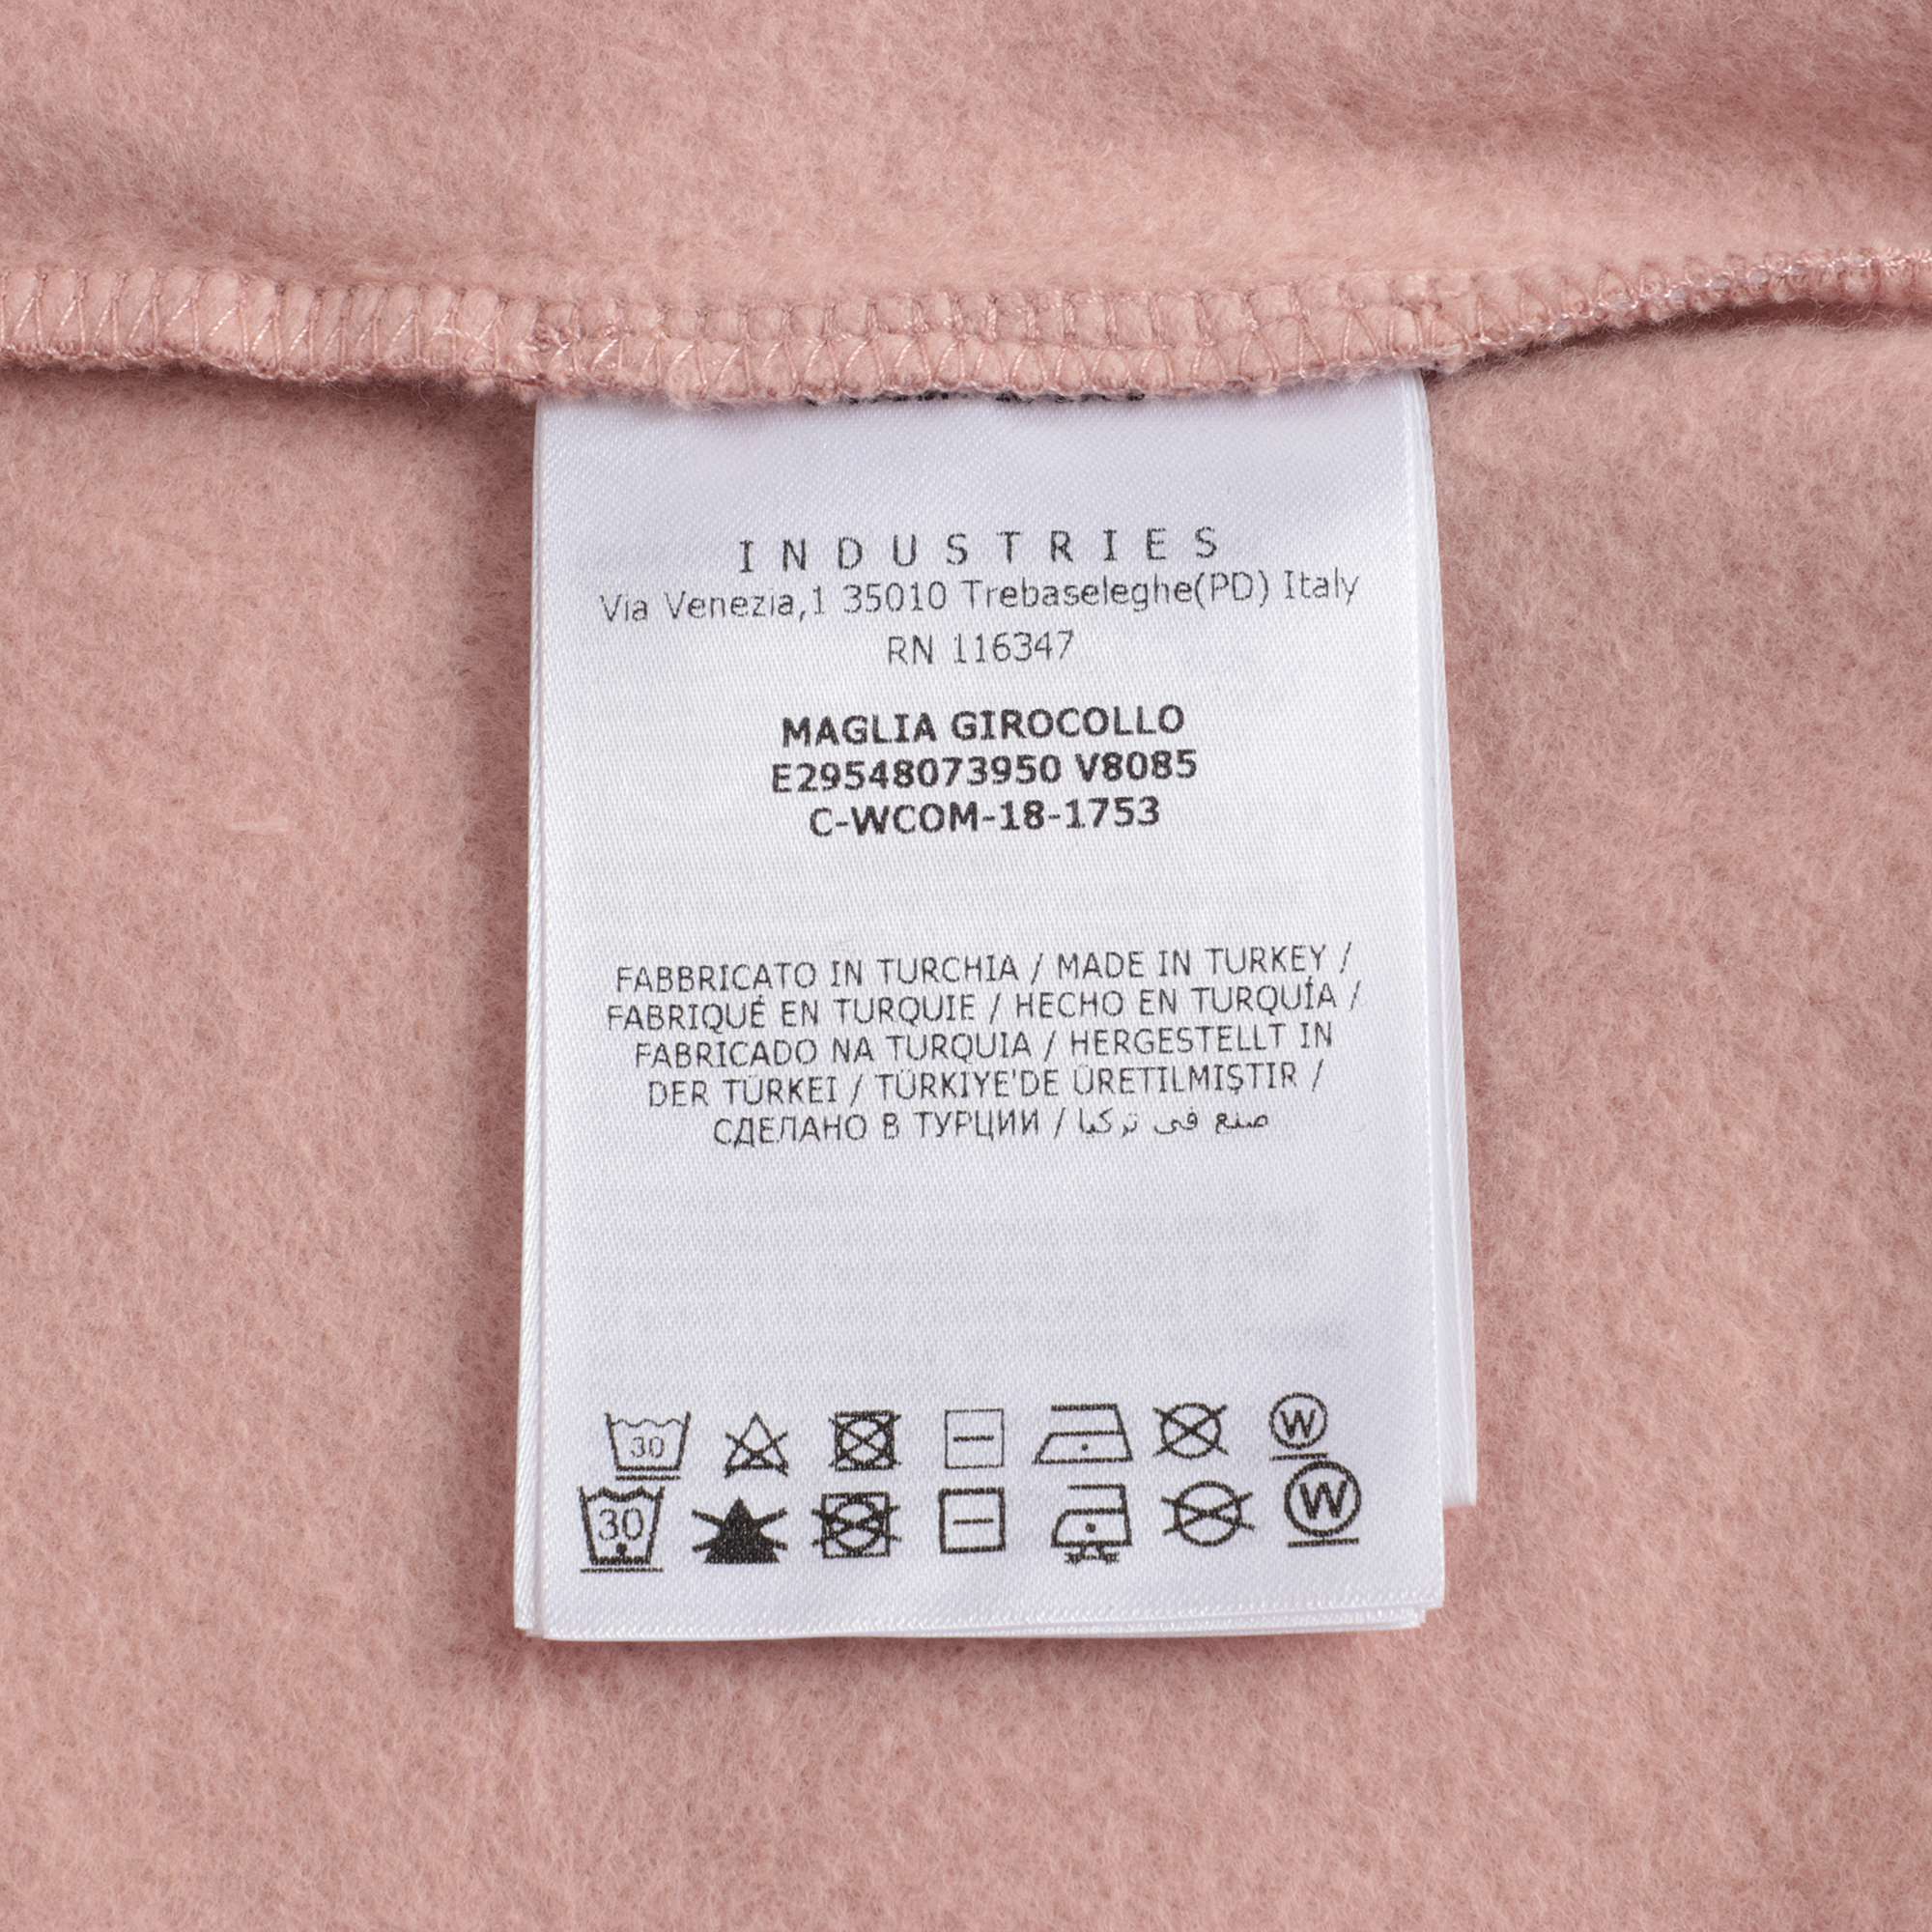 Girls Pink Logo Cotton Sweater